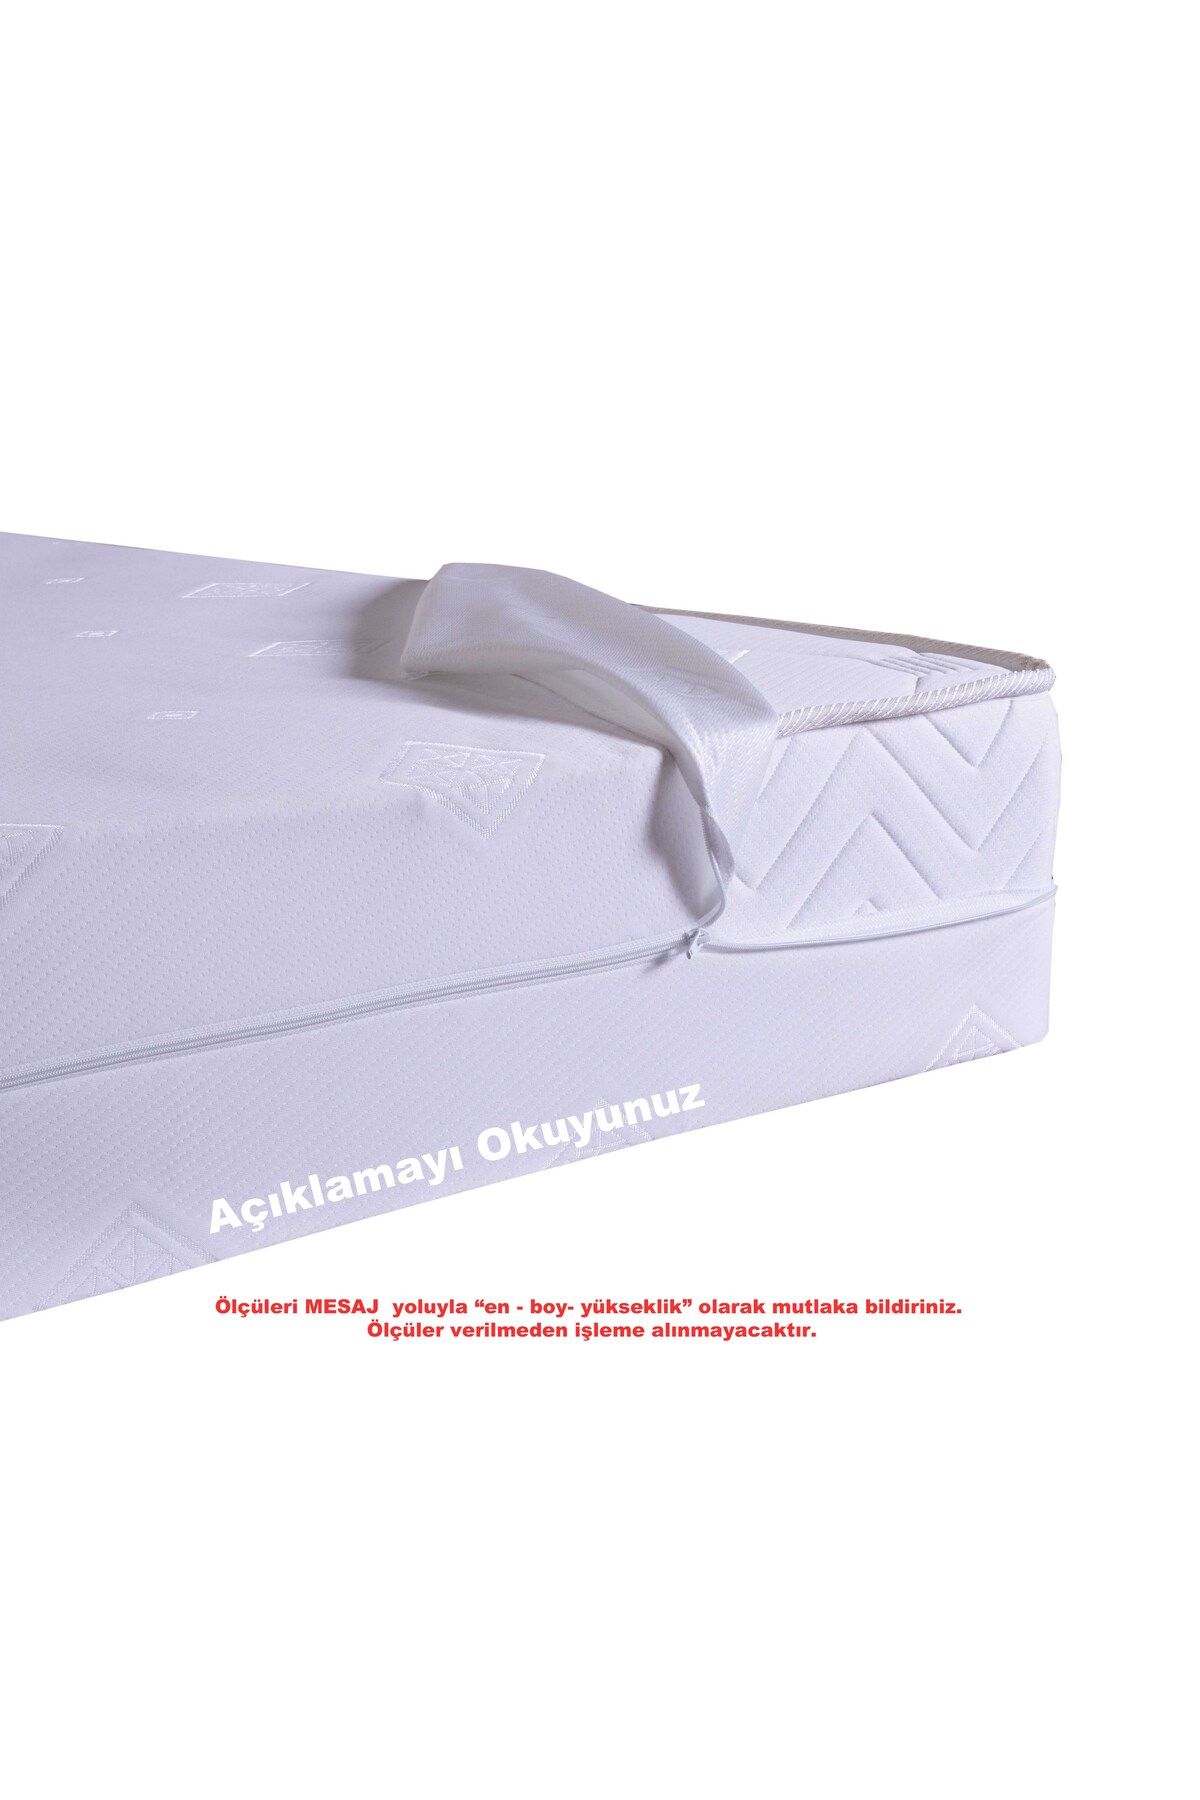 Artex Kılıf 150x200 Yatak Kılıfı Koruyucusu Fermuarlı Kılıf Yatağa Özel Üretim